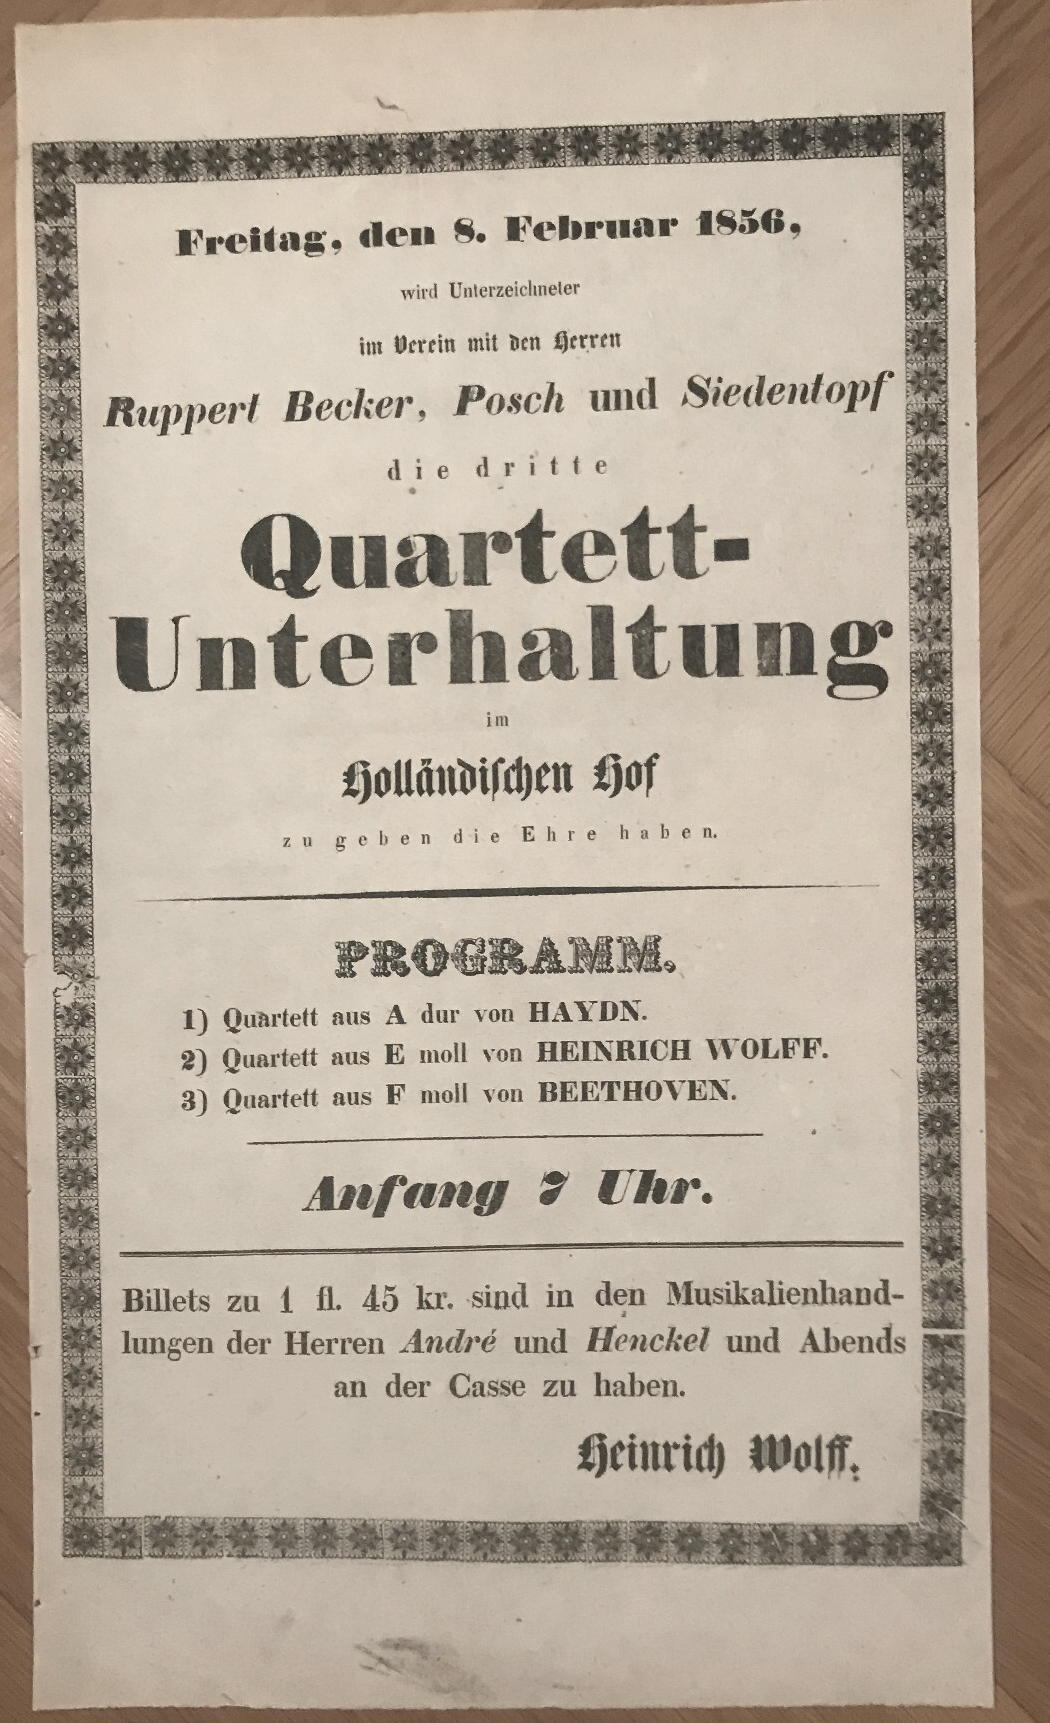  - Im Verein mit den Herren Ruppert becker, Posch und Siedentopf die dritte Quartett-Unterhaltung im Hollndischen. Hof. (Unterzeichner:) Heinrich Wolff..